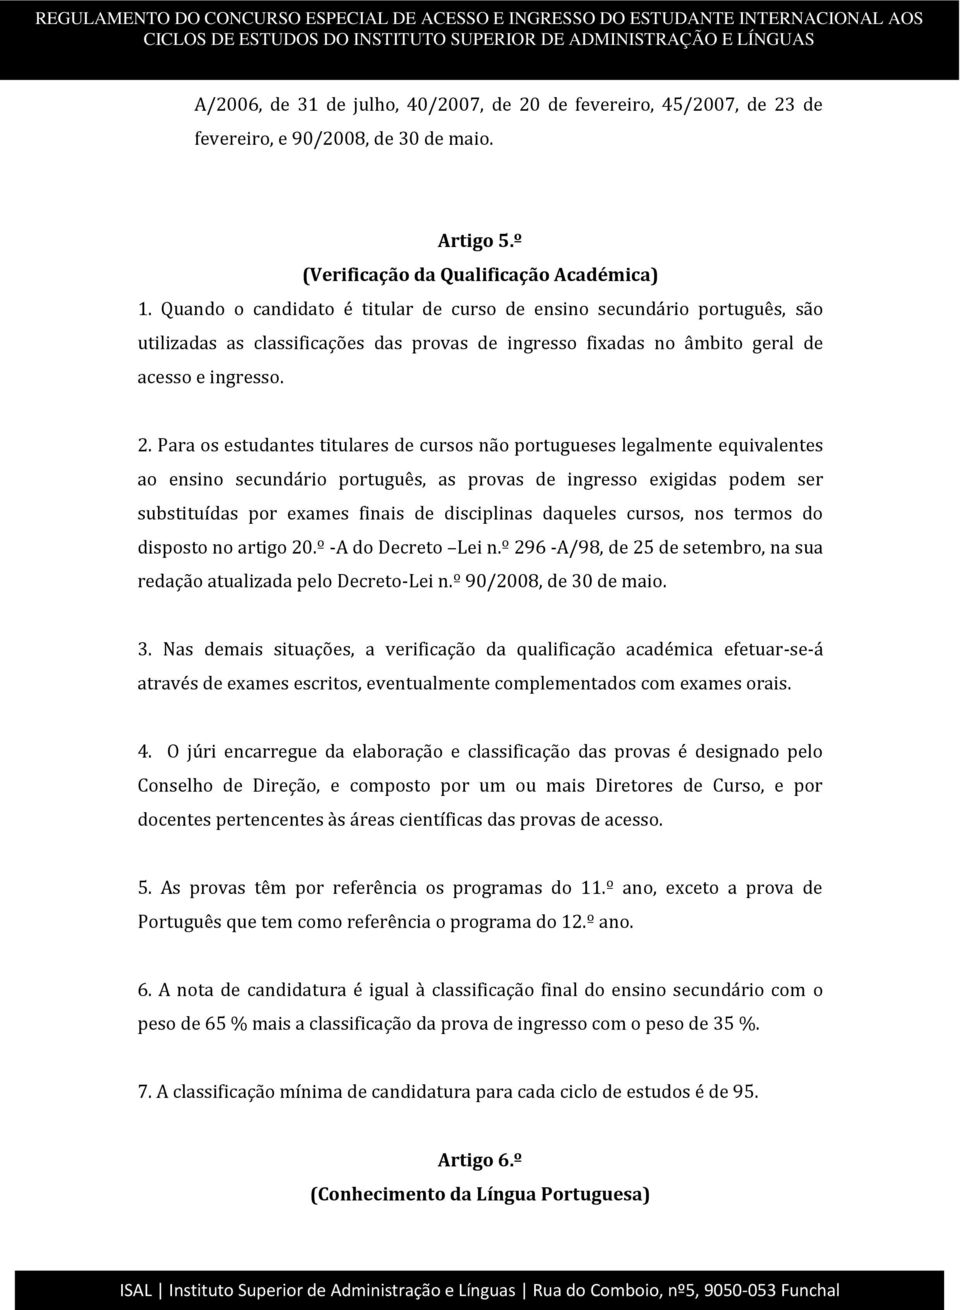 Para os estudantes titulares de cursos não portugueses legalmente equivalentes ao ensino secundário português, as provas de ingresso exigidas podem ser substituídas por exames finais de disciplinas